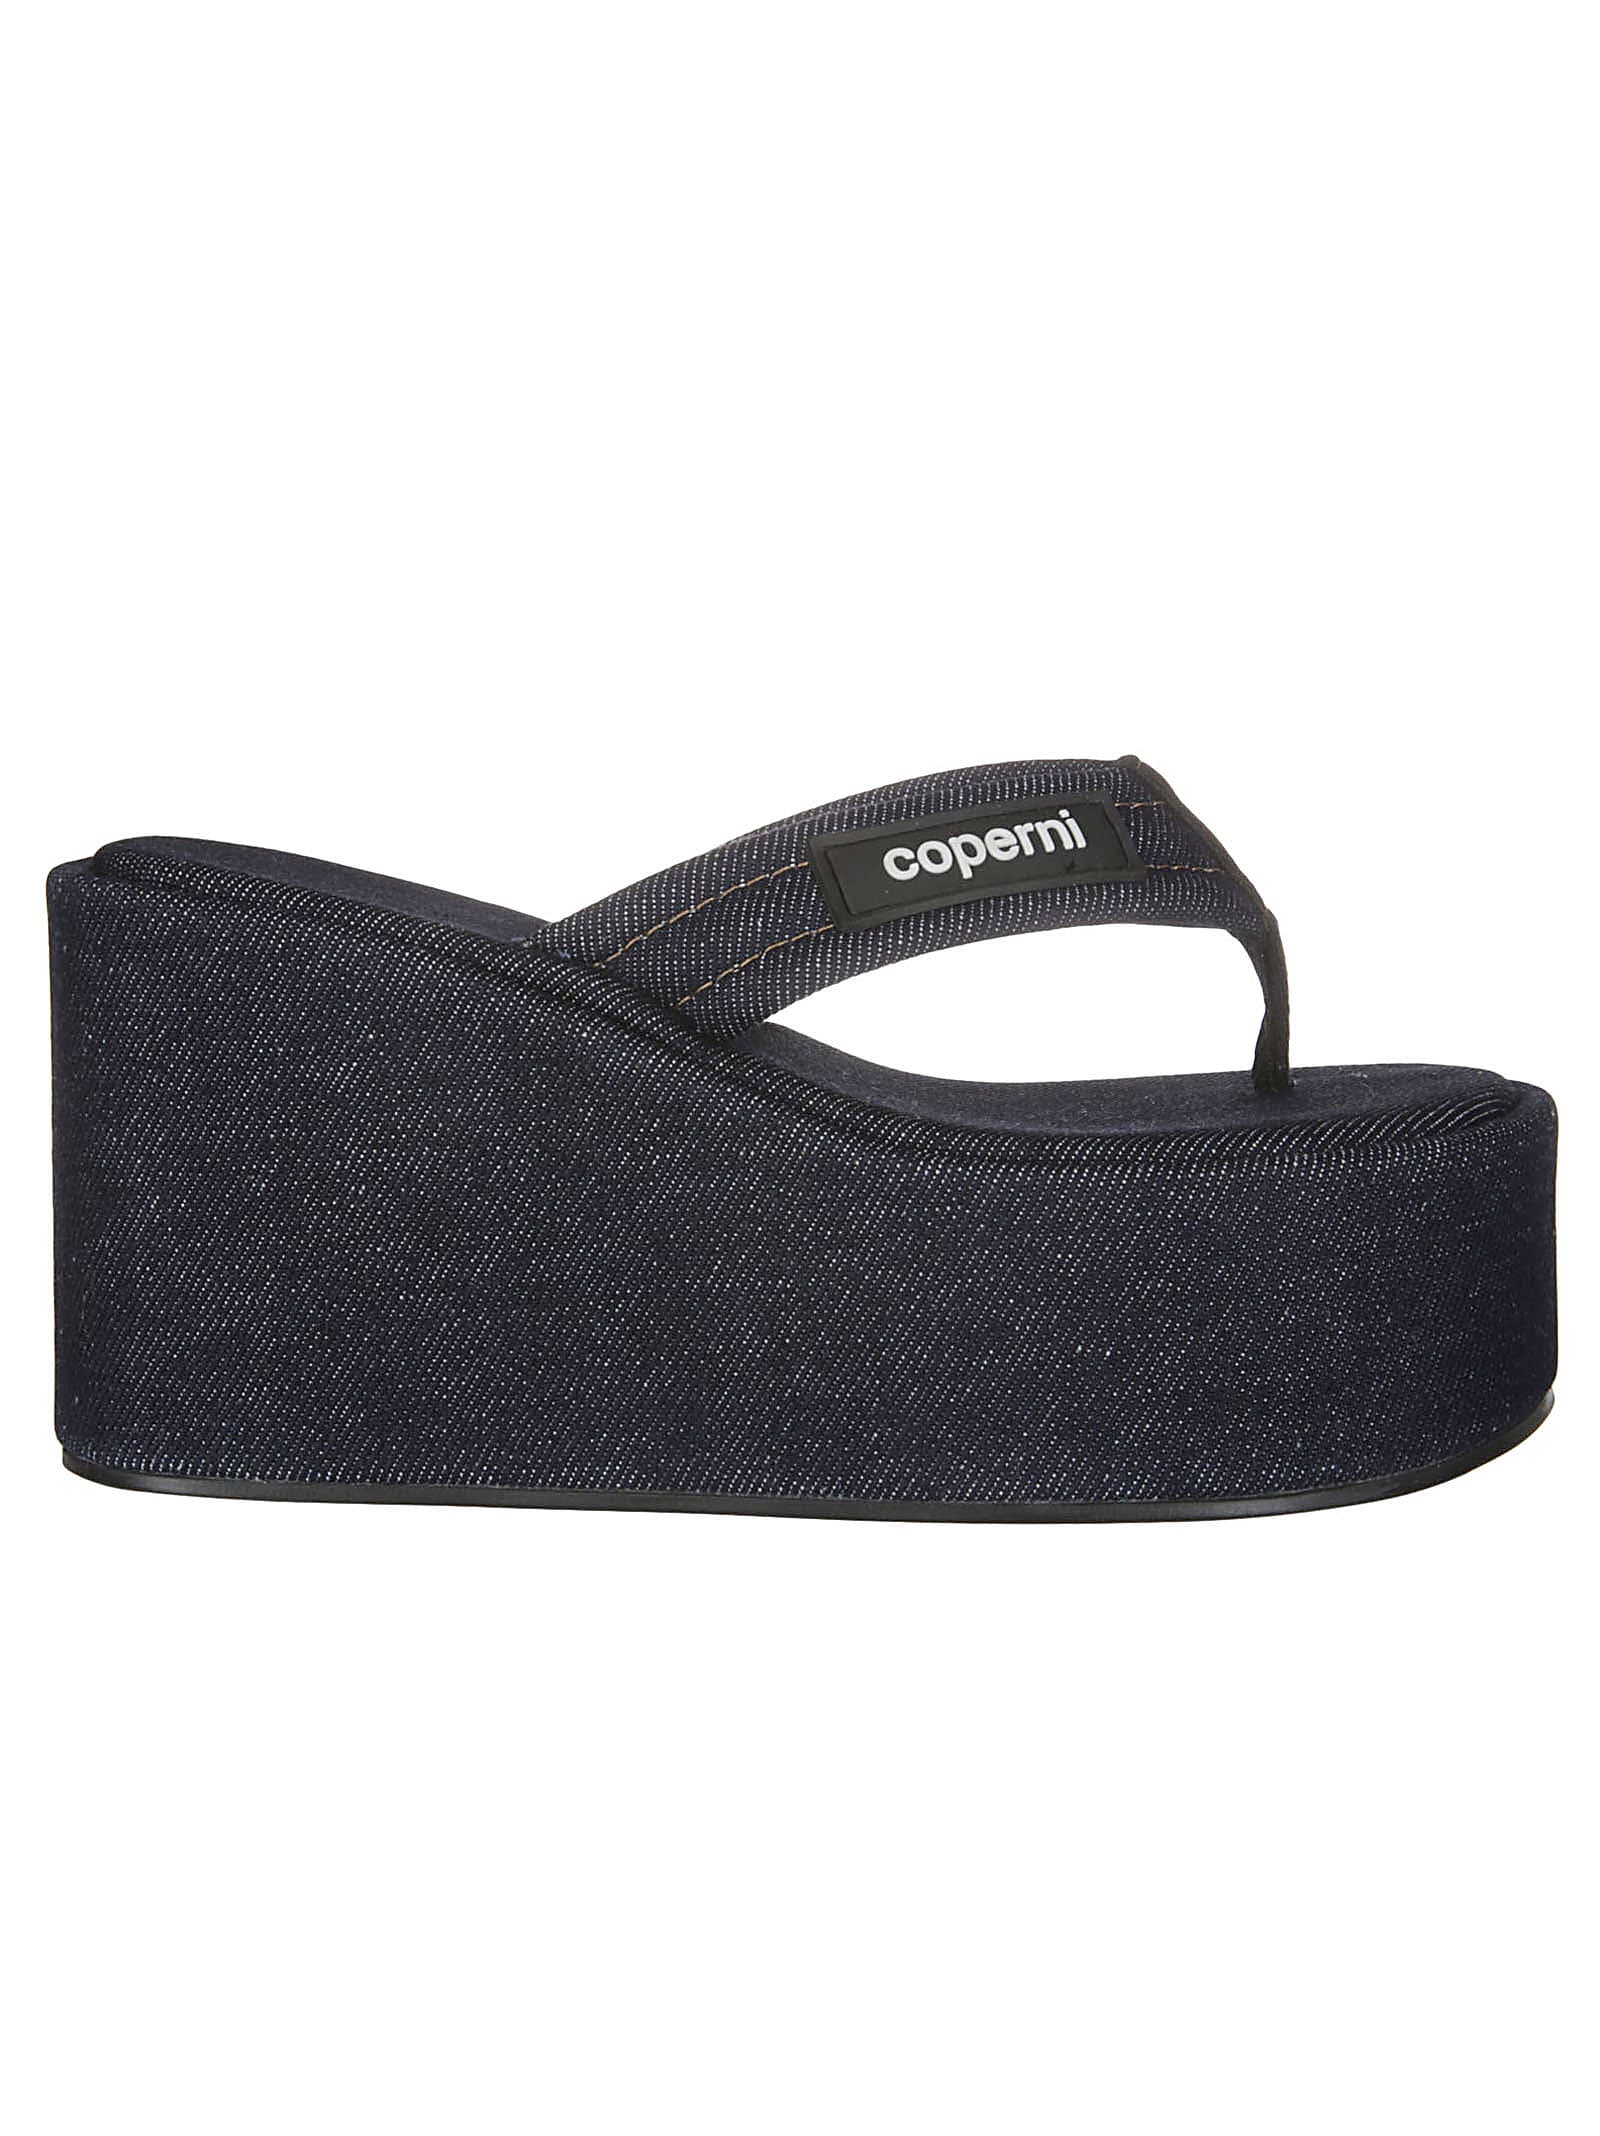 Shop Coperni Denim Branded Wedge Sandal In 216d